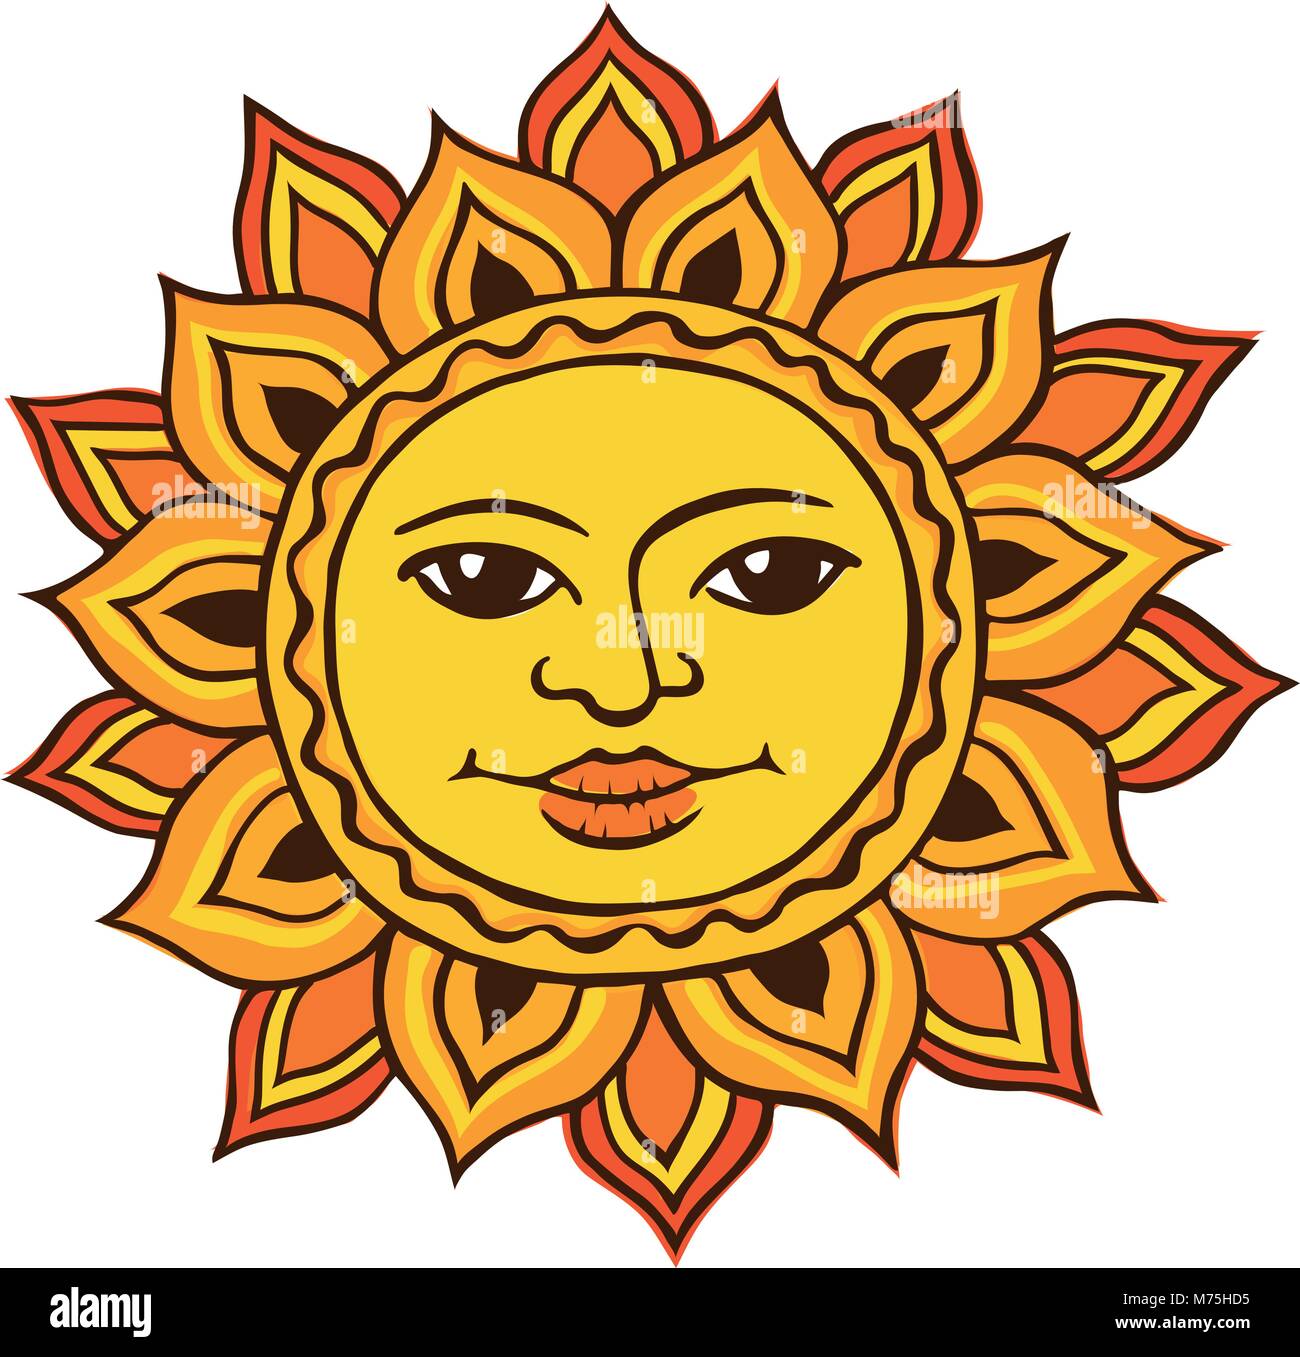 Ethnische Zeichnung der Sonne Stock Vektor